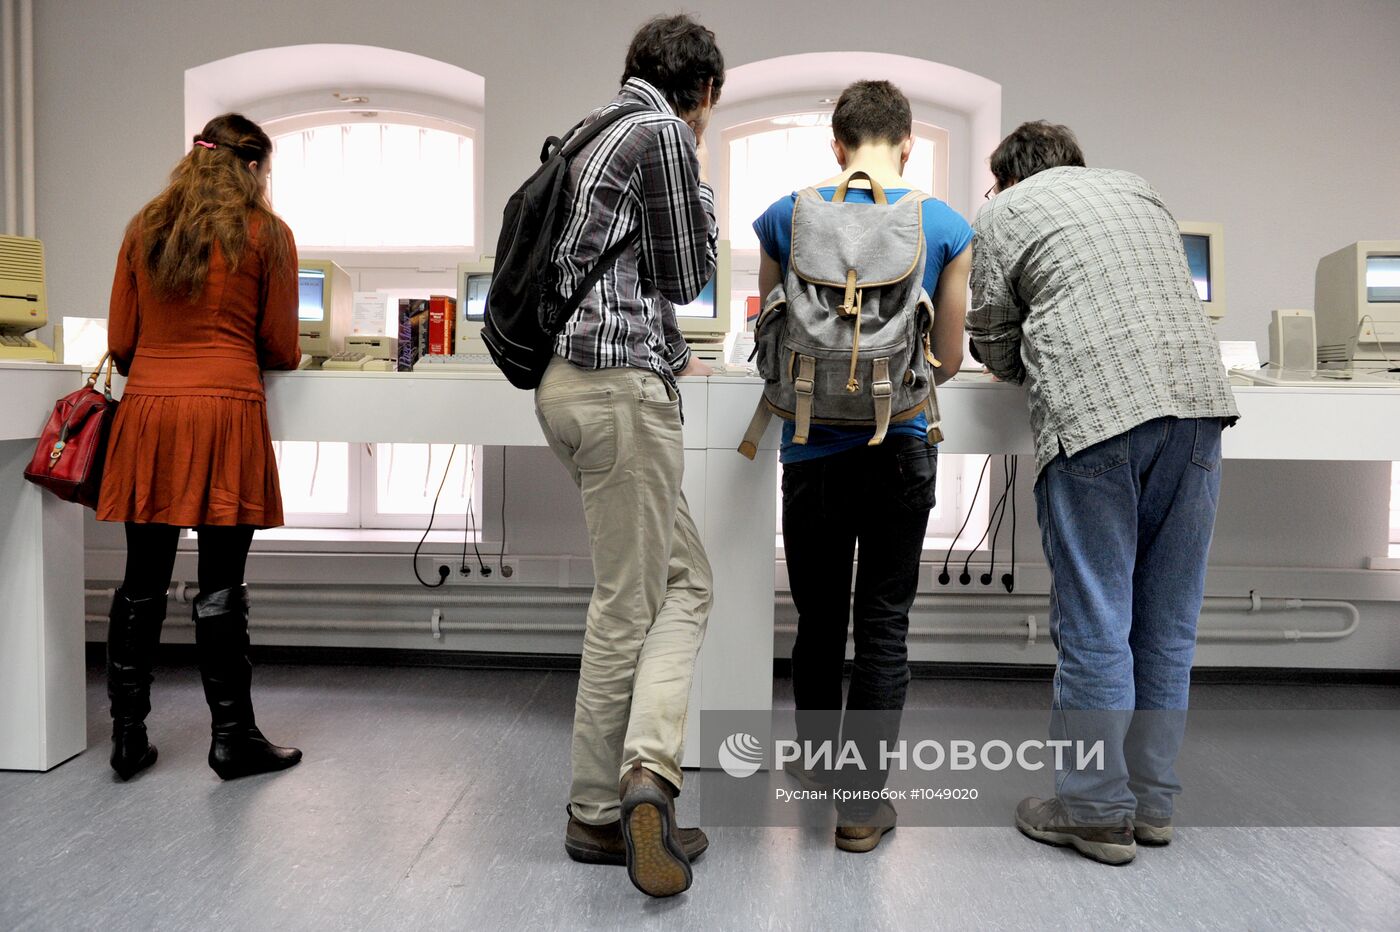 Музей продукции компании Apple в Москве